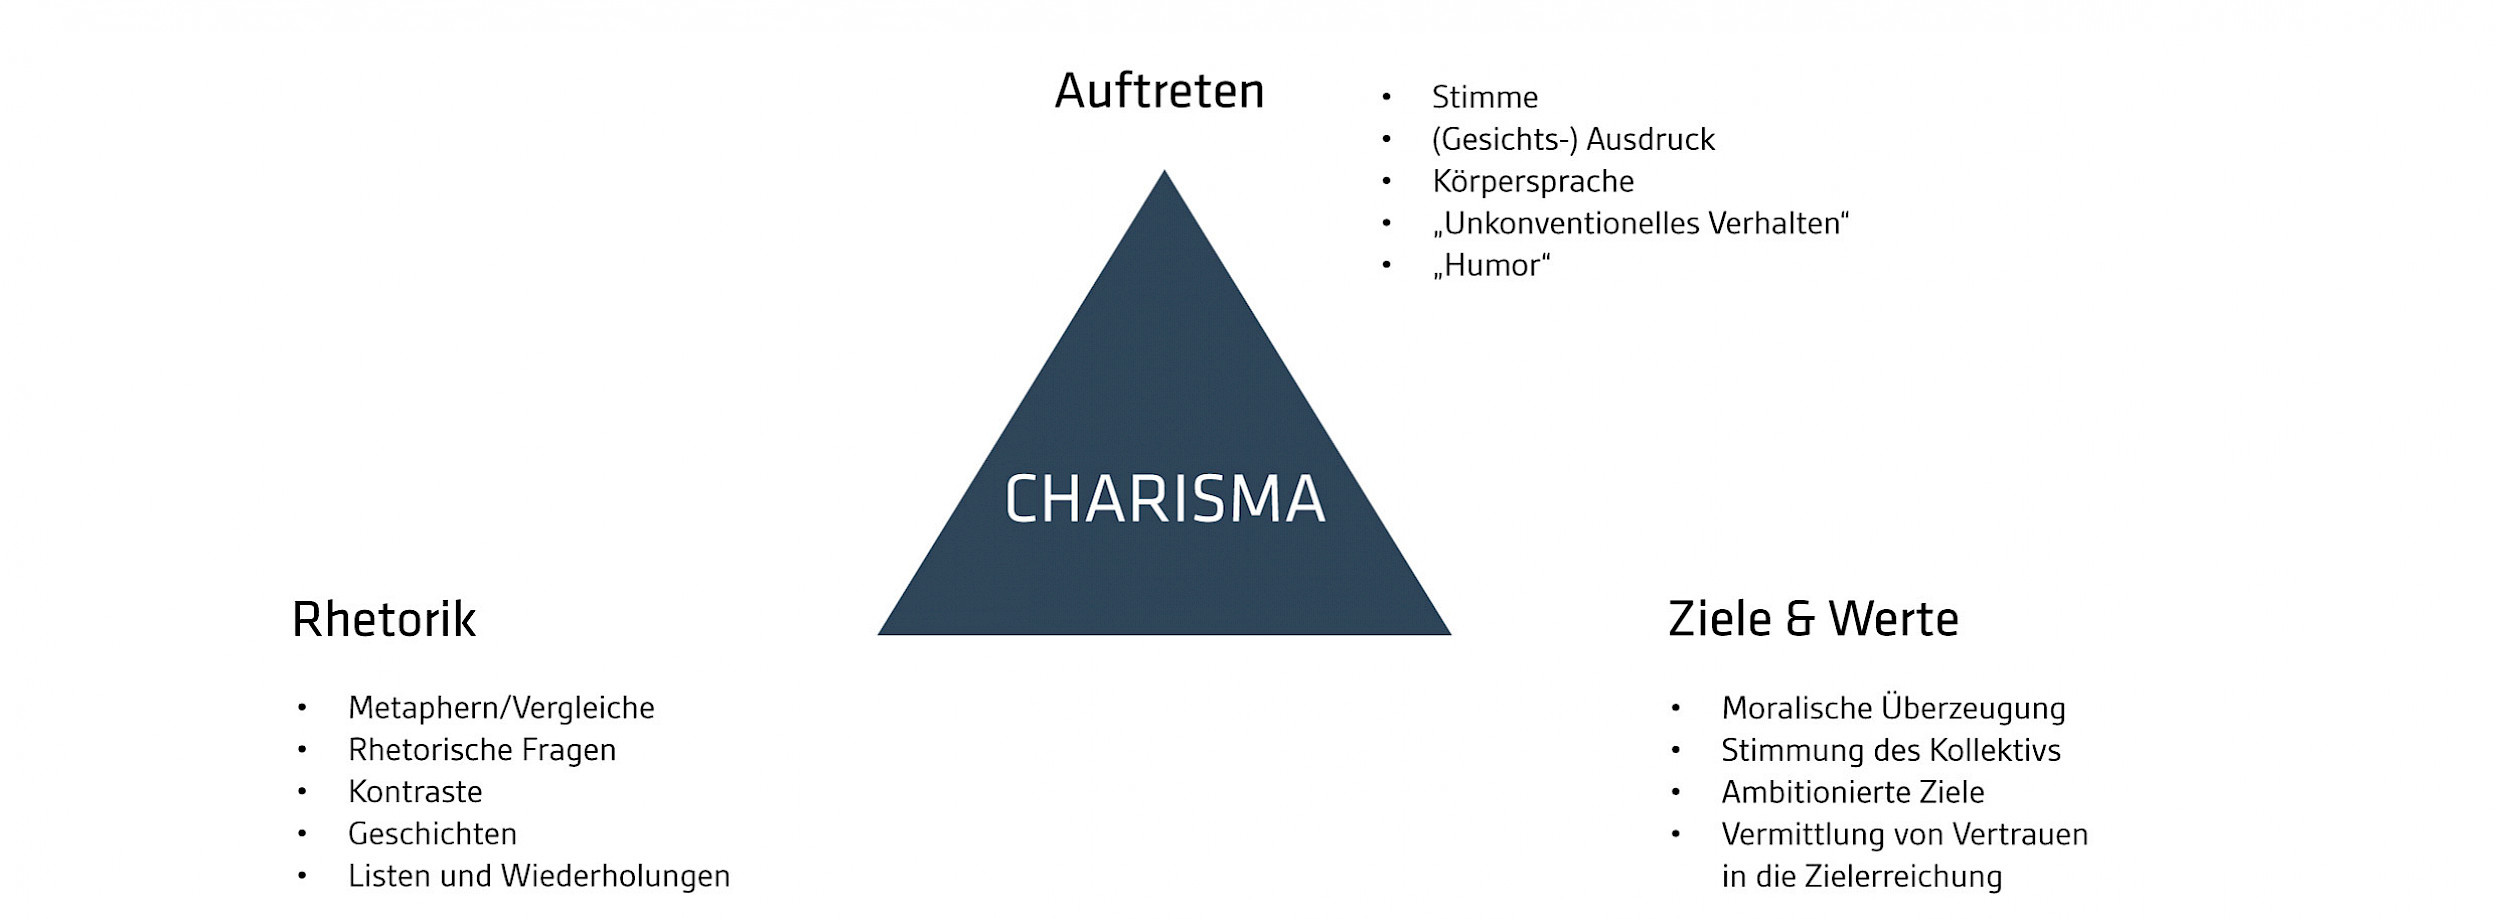 Charisma-Dreieck (in Anlehnung an Aristoteles)